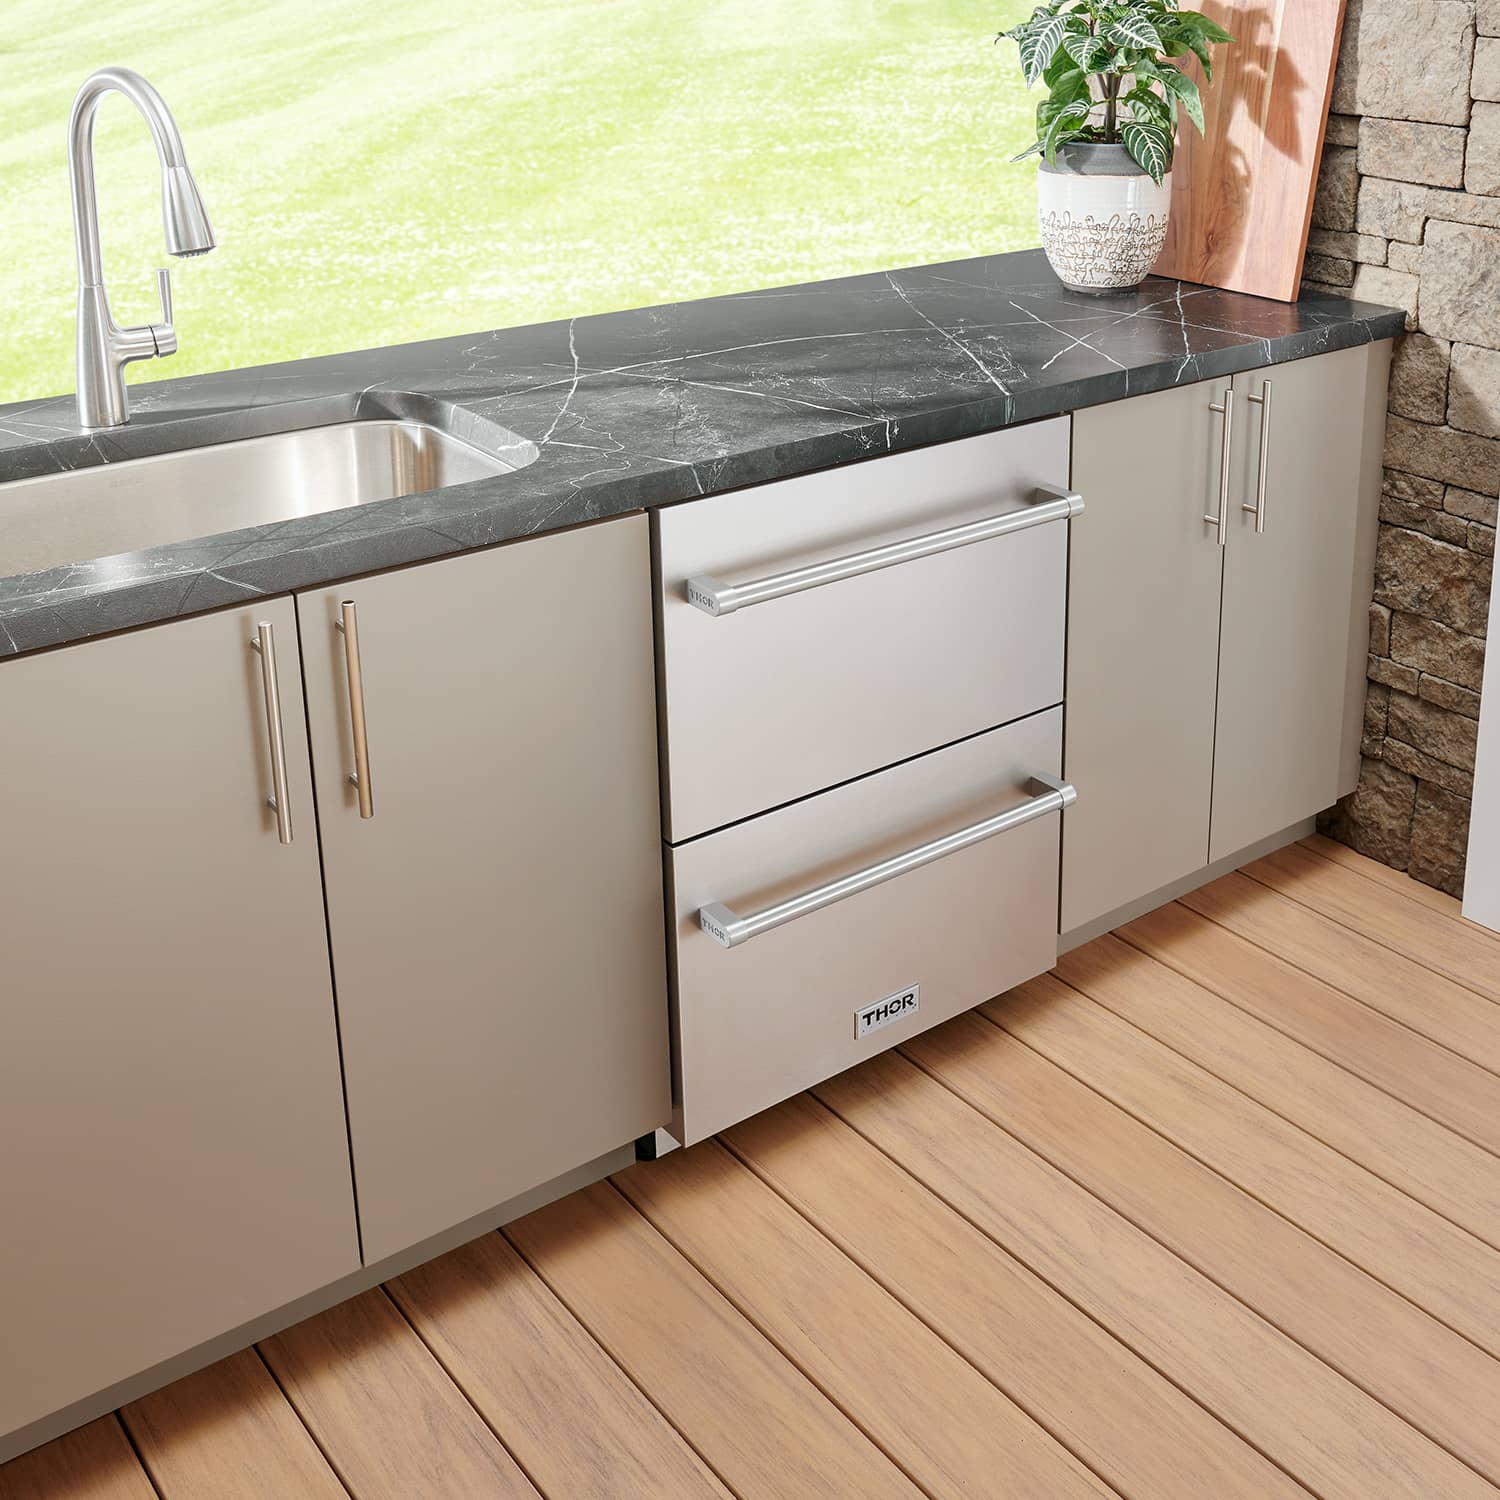 Outdoor Kitchen Sink Cabinet in Stainless Steel - THOR Kitchen